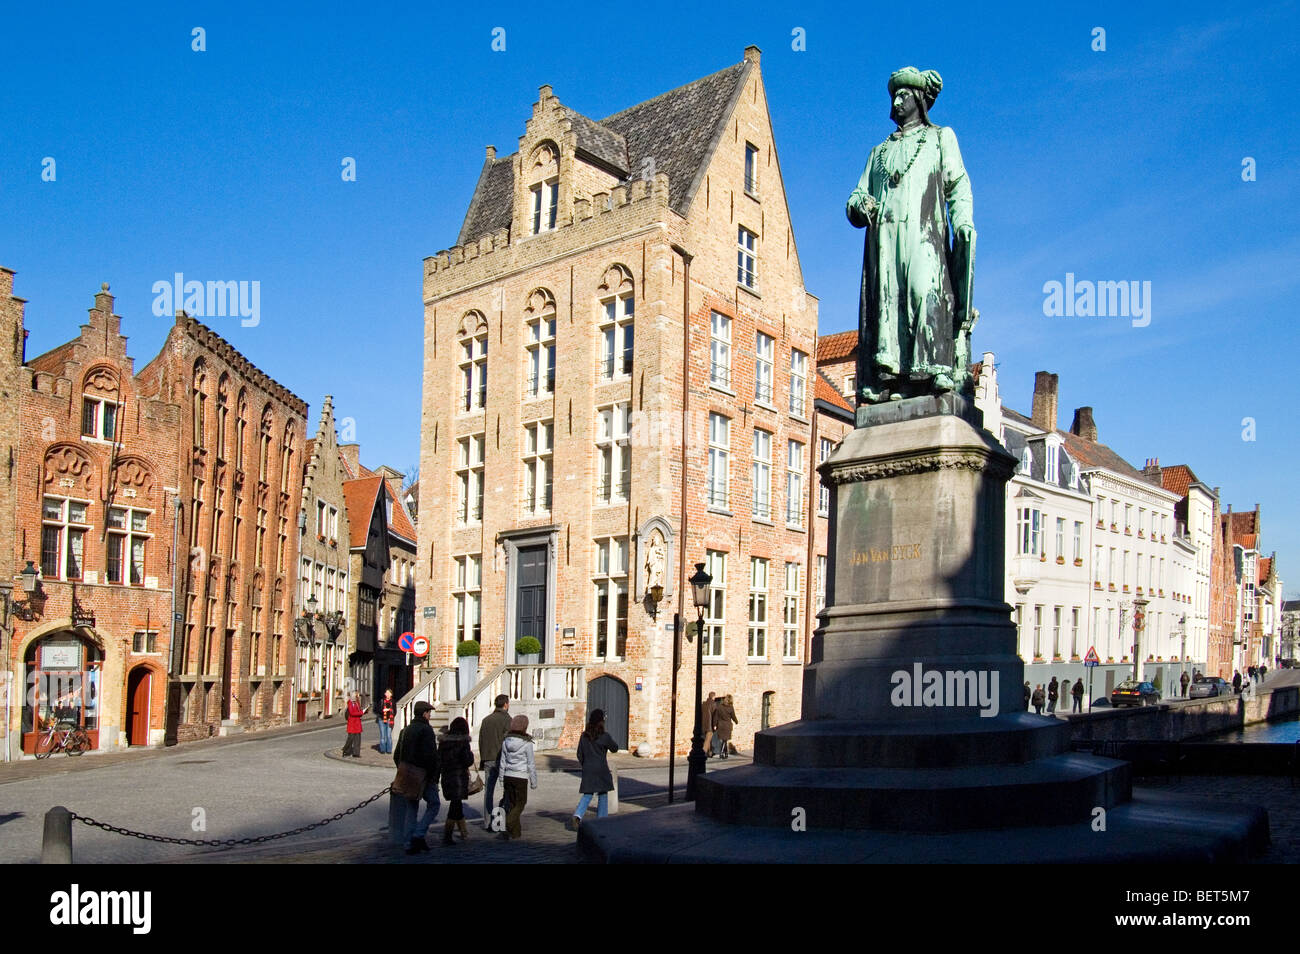 Statue of Northern Renaissance artist Jan Van Eyck in the city Bruges, West Flanders, Belgium Stock Photo